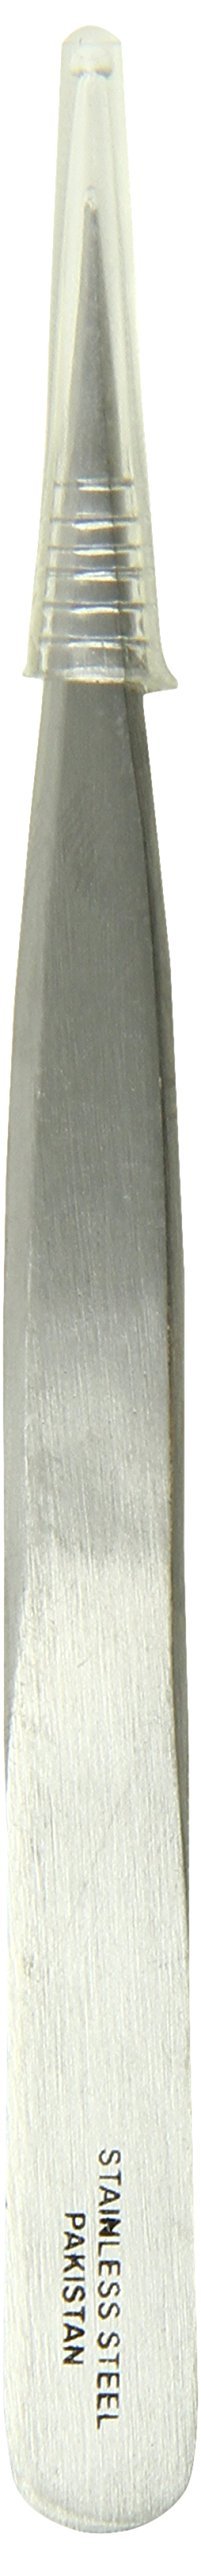 [Australia] - Tamsco Pointed Tweezers, Progressive, Fine 4.5-Inch Stainless Steel Pointed Tweezers Fine Tip Progressive 